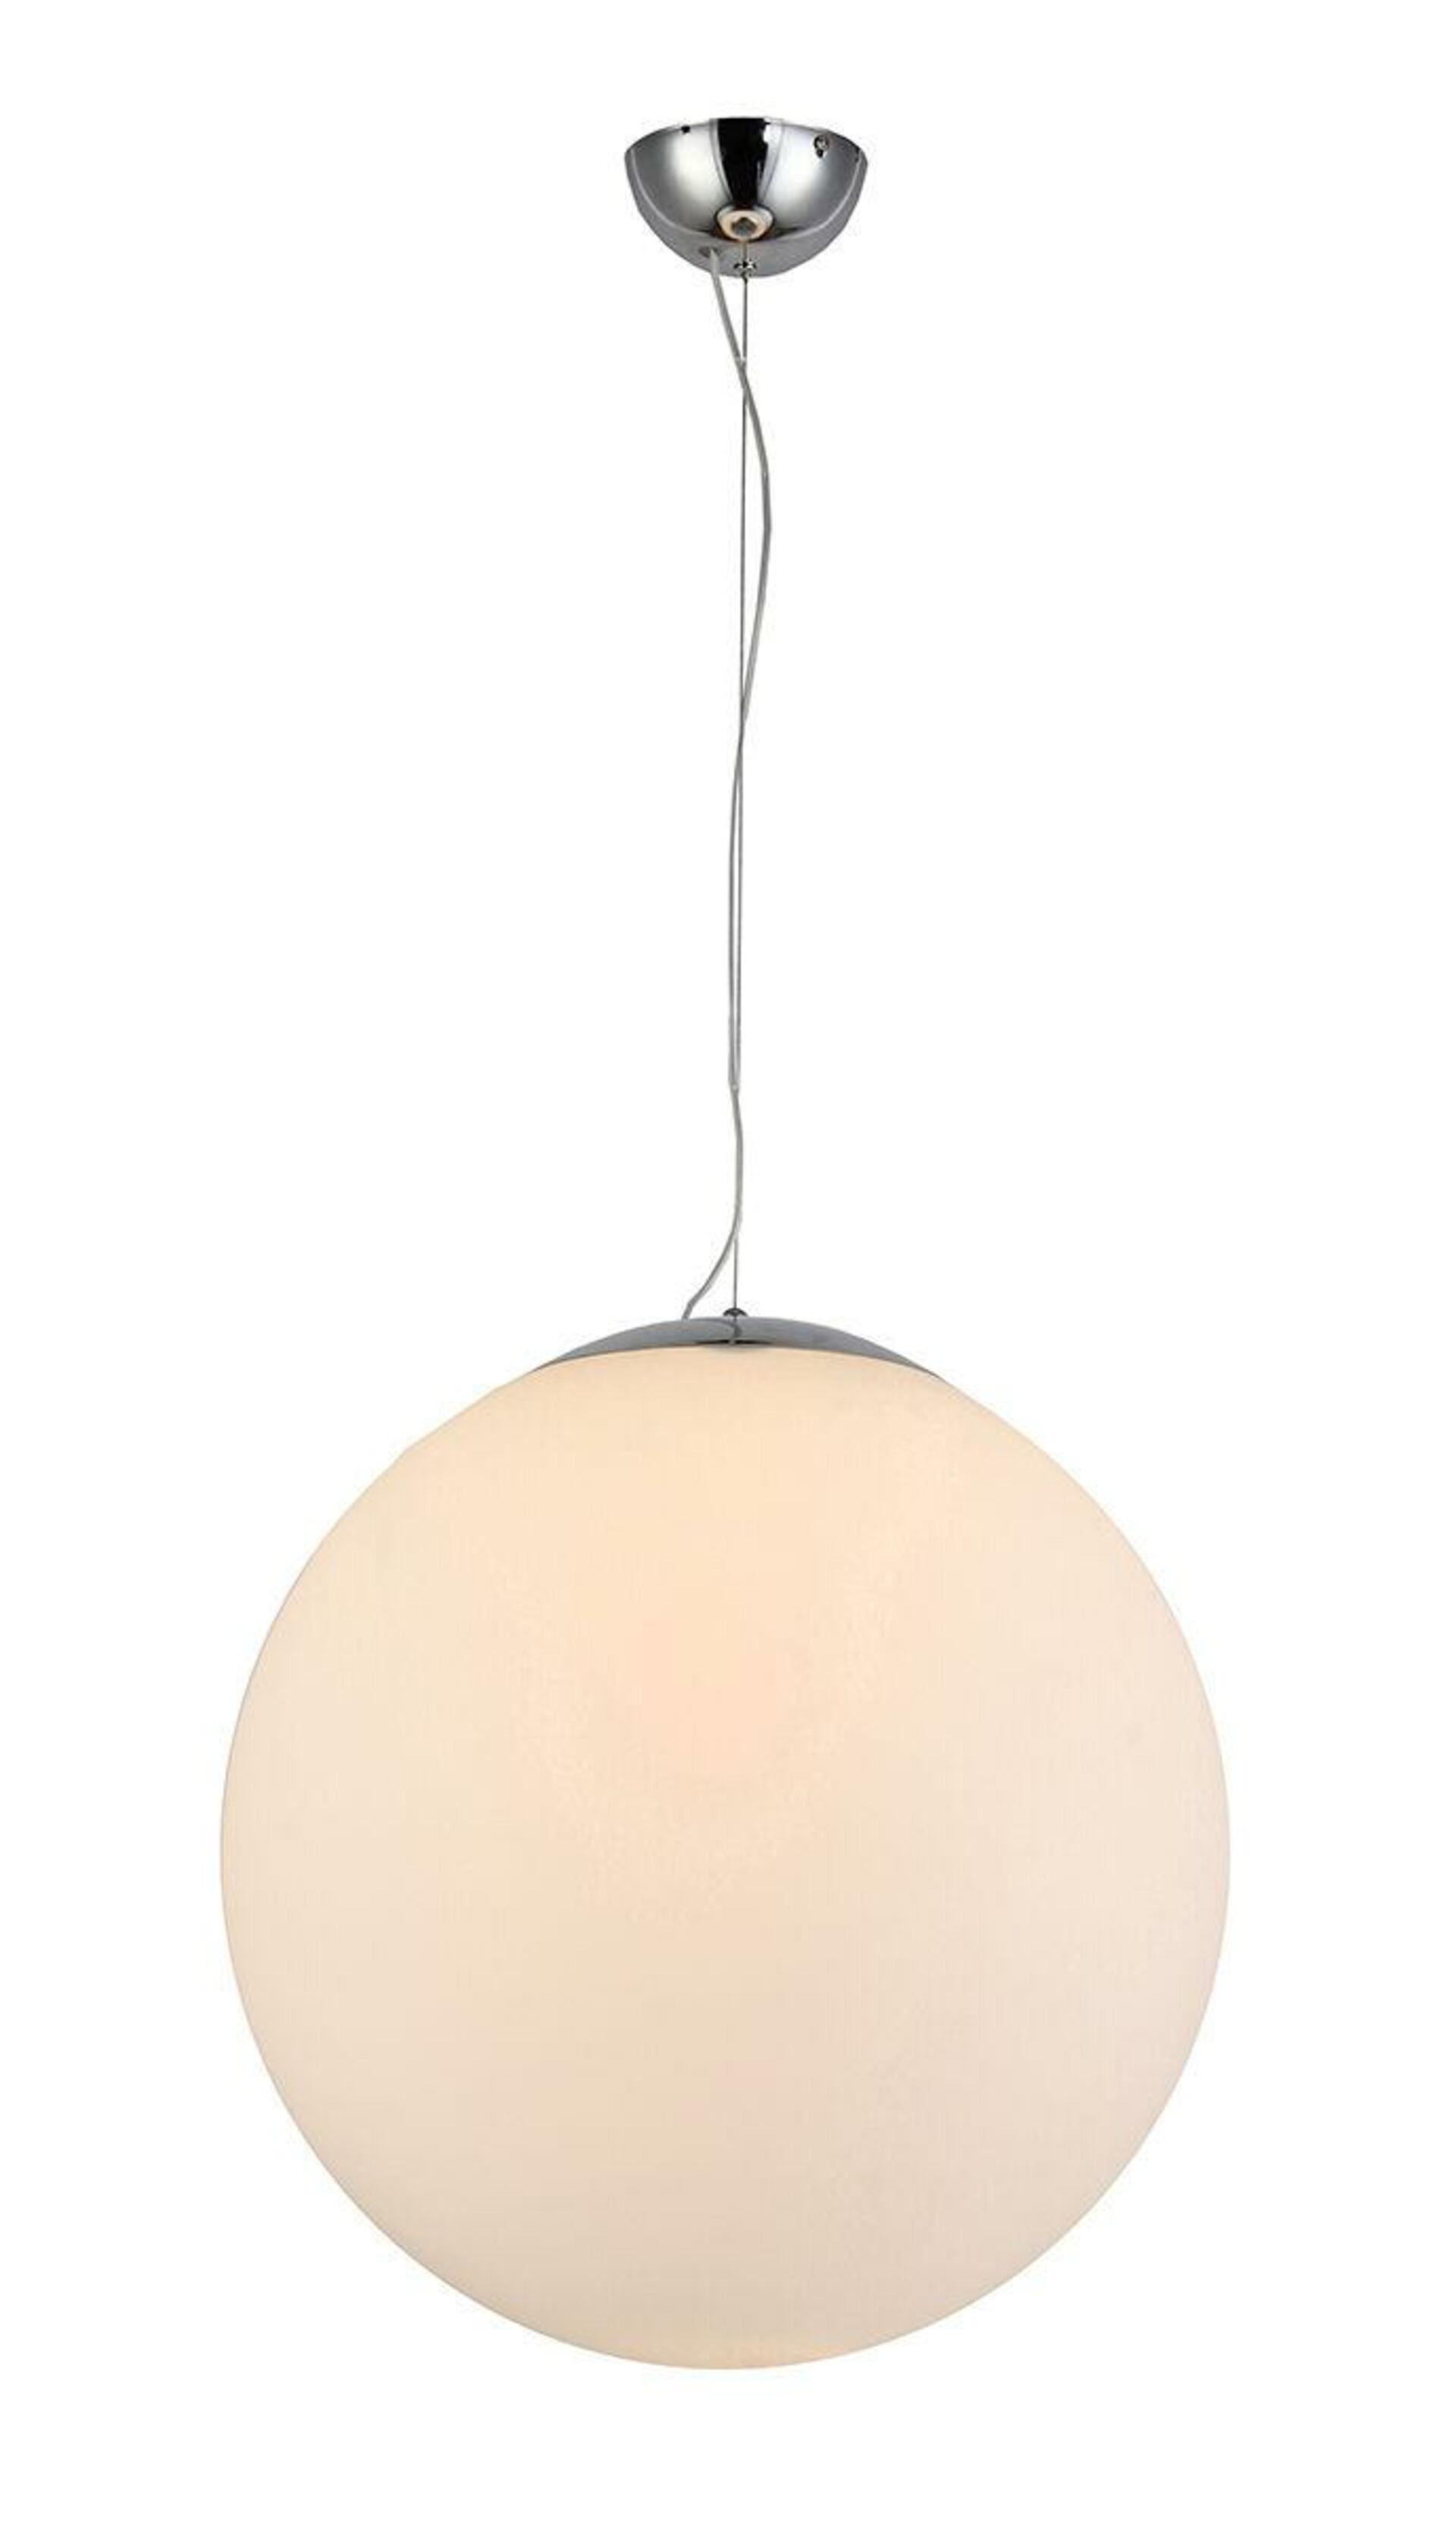 Levně AZzardo AZ1328 závěsné svítidlo White ball 40